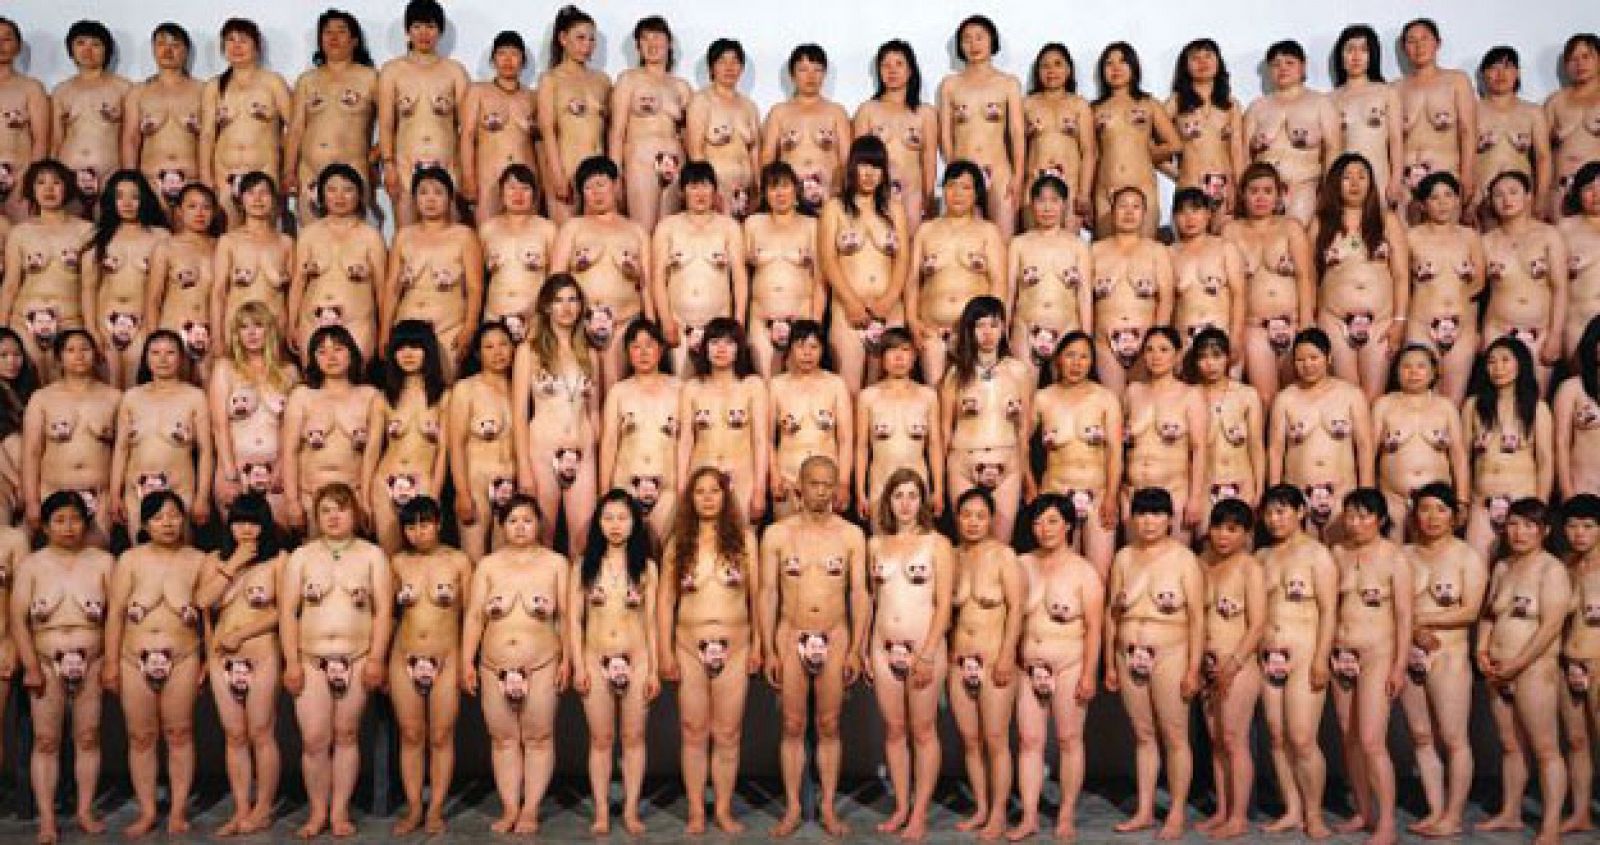 Una de las imágenes que los seguidores de Ai Weiwei han colgado en Internet